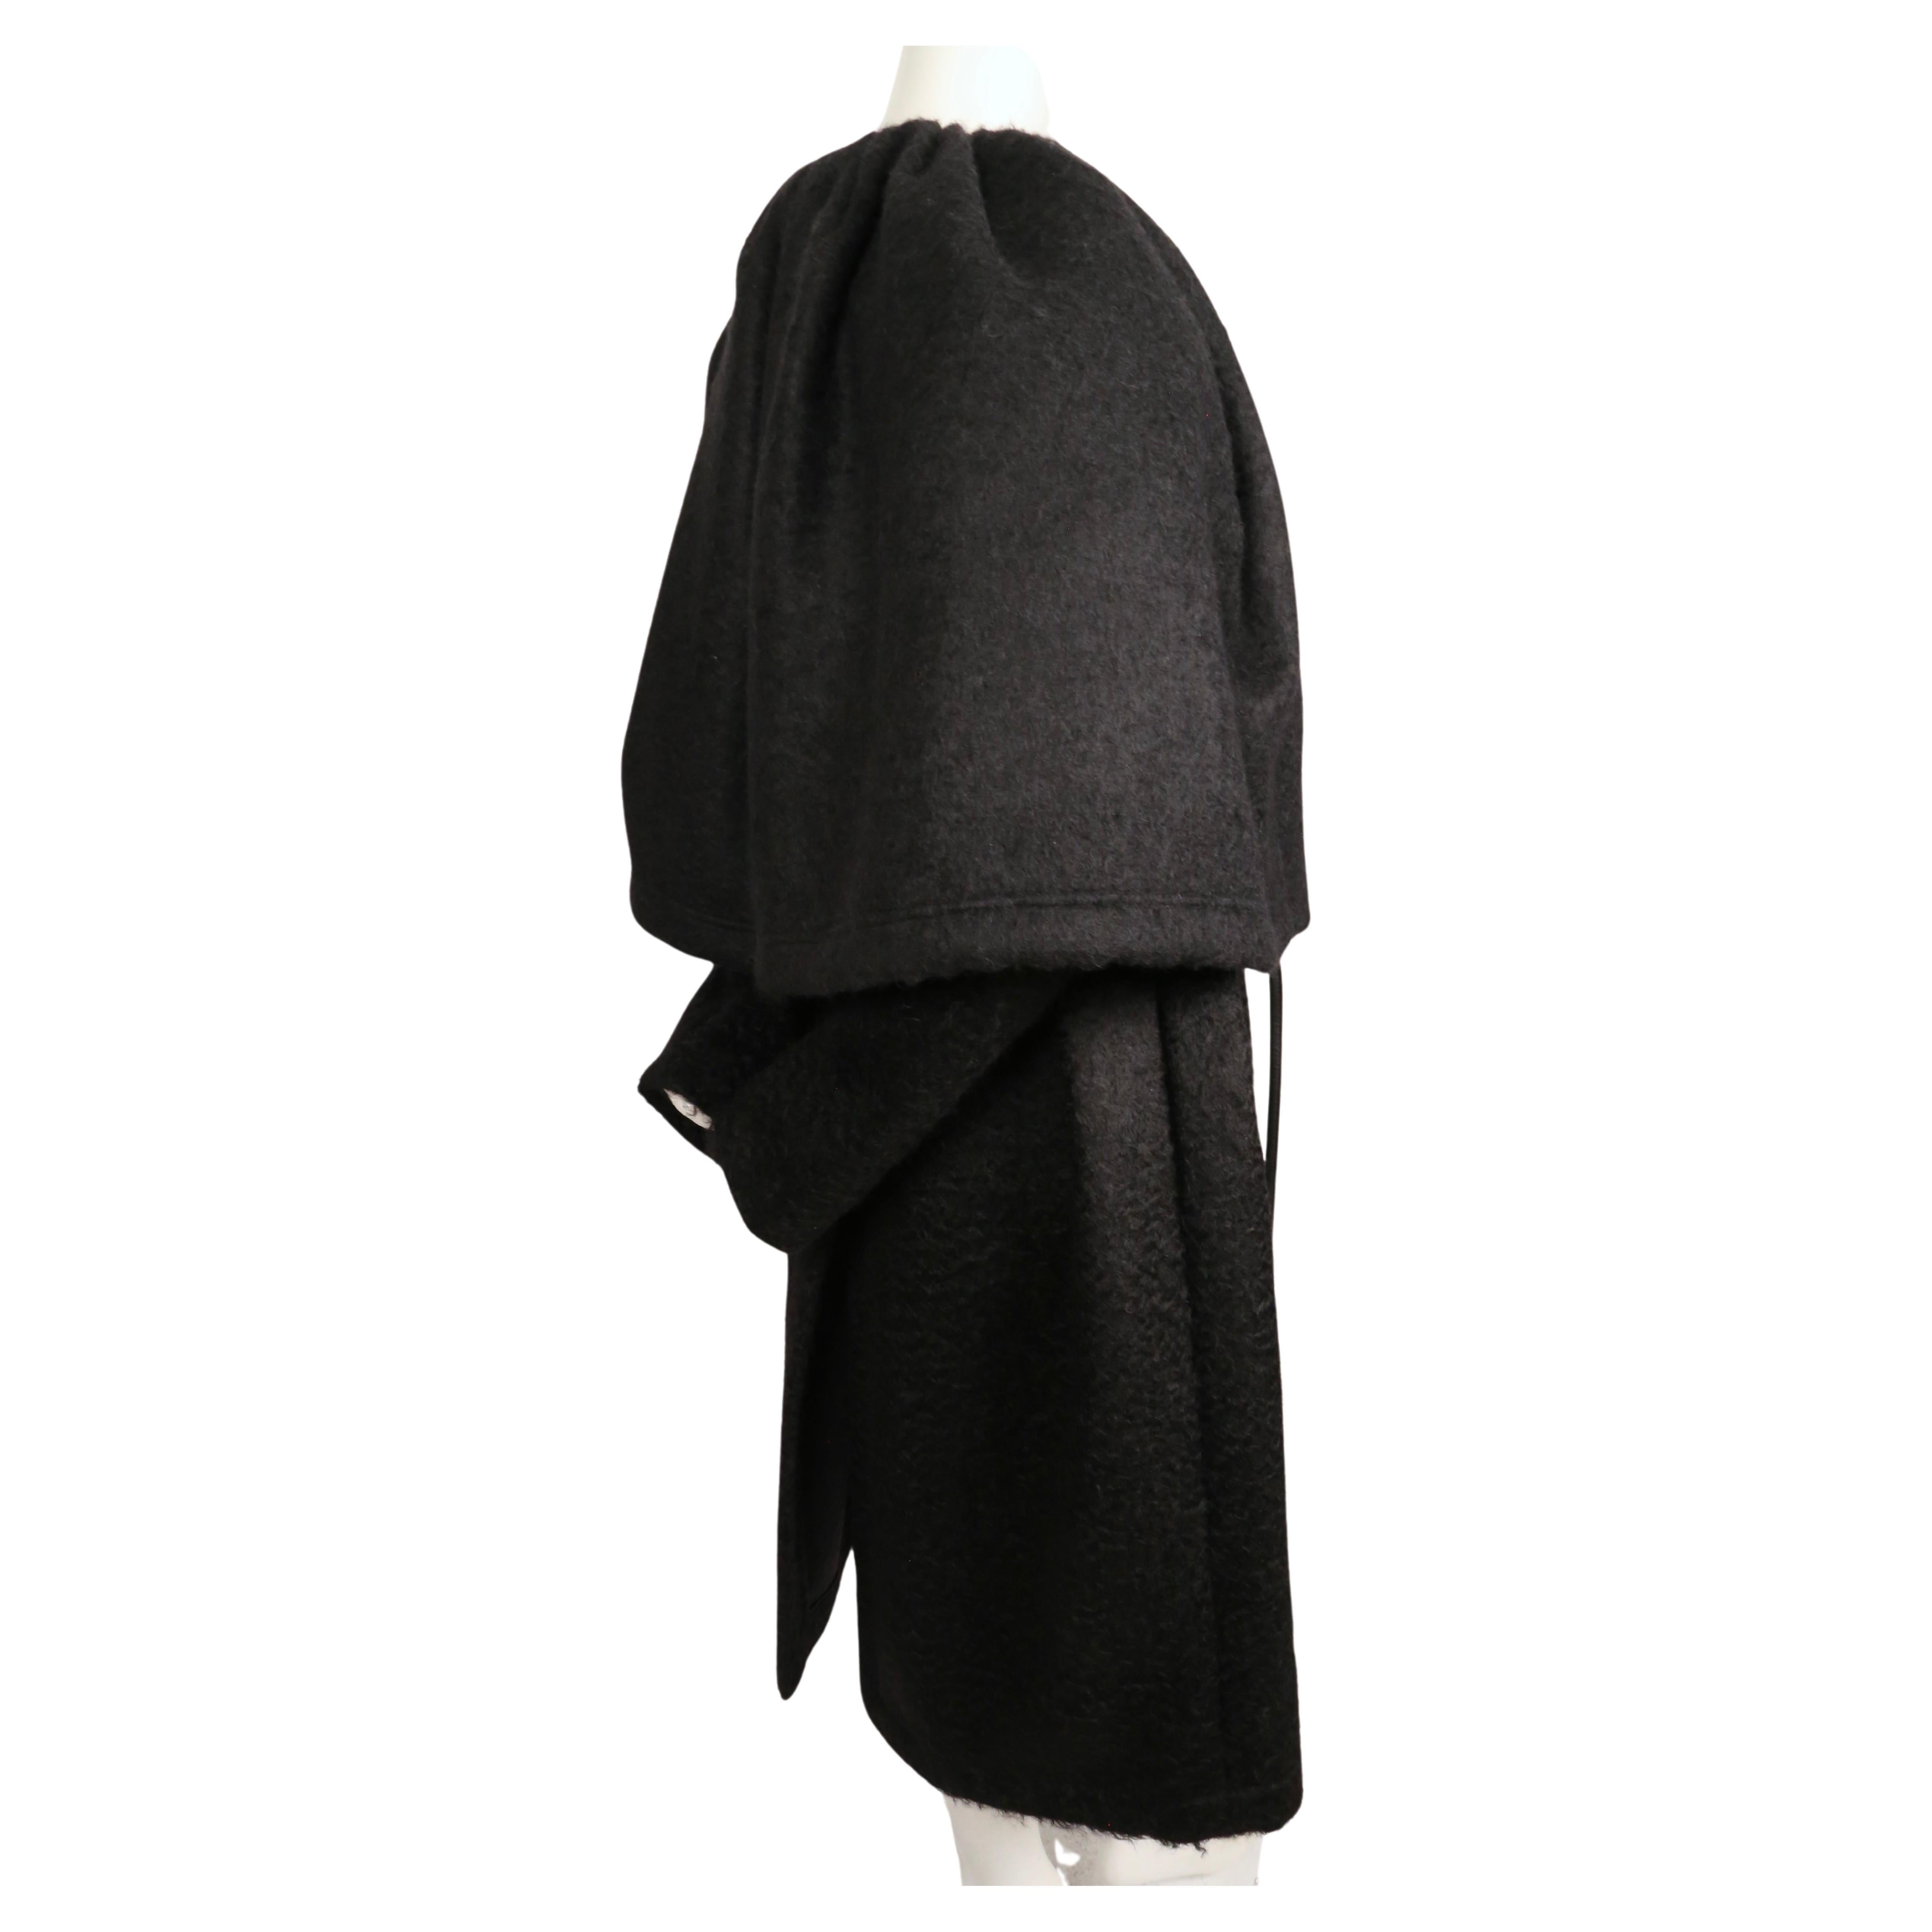 CÉLINE by PHOEBE PHILO manteau de défilé 2016 en laine mohair noire avec cape attachée Unisexe en vente